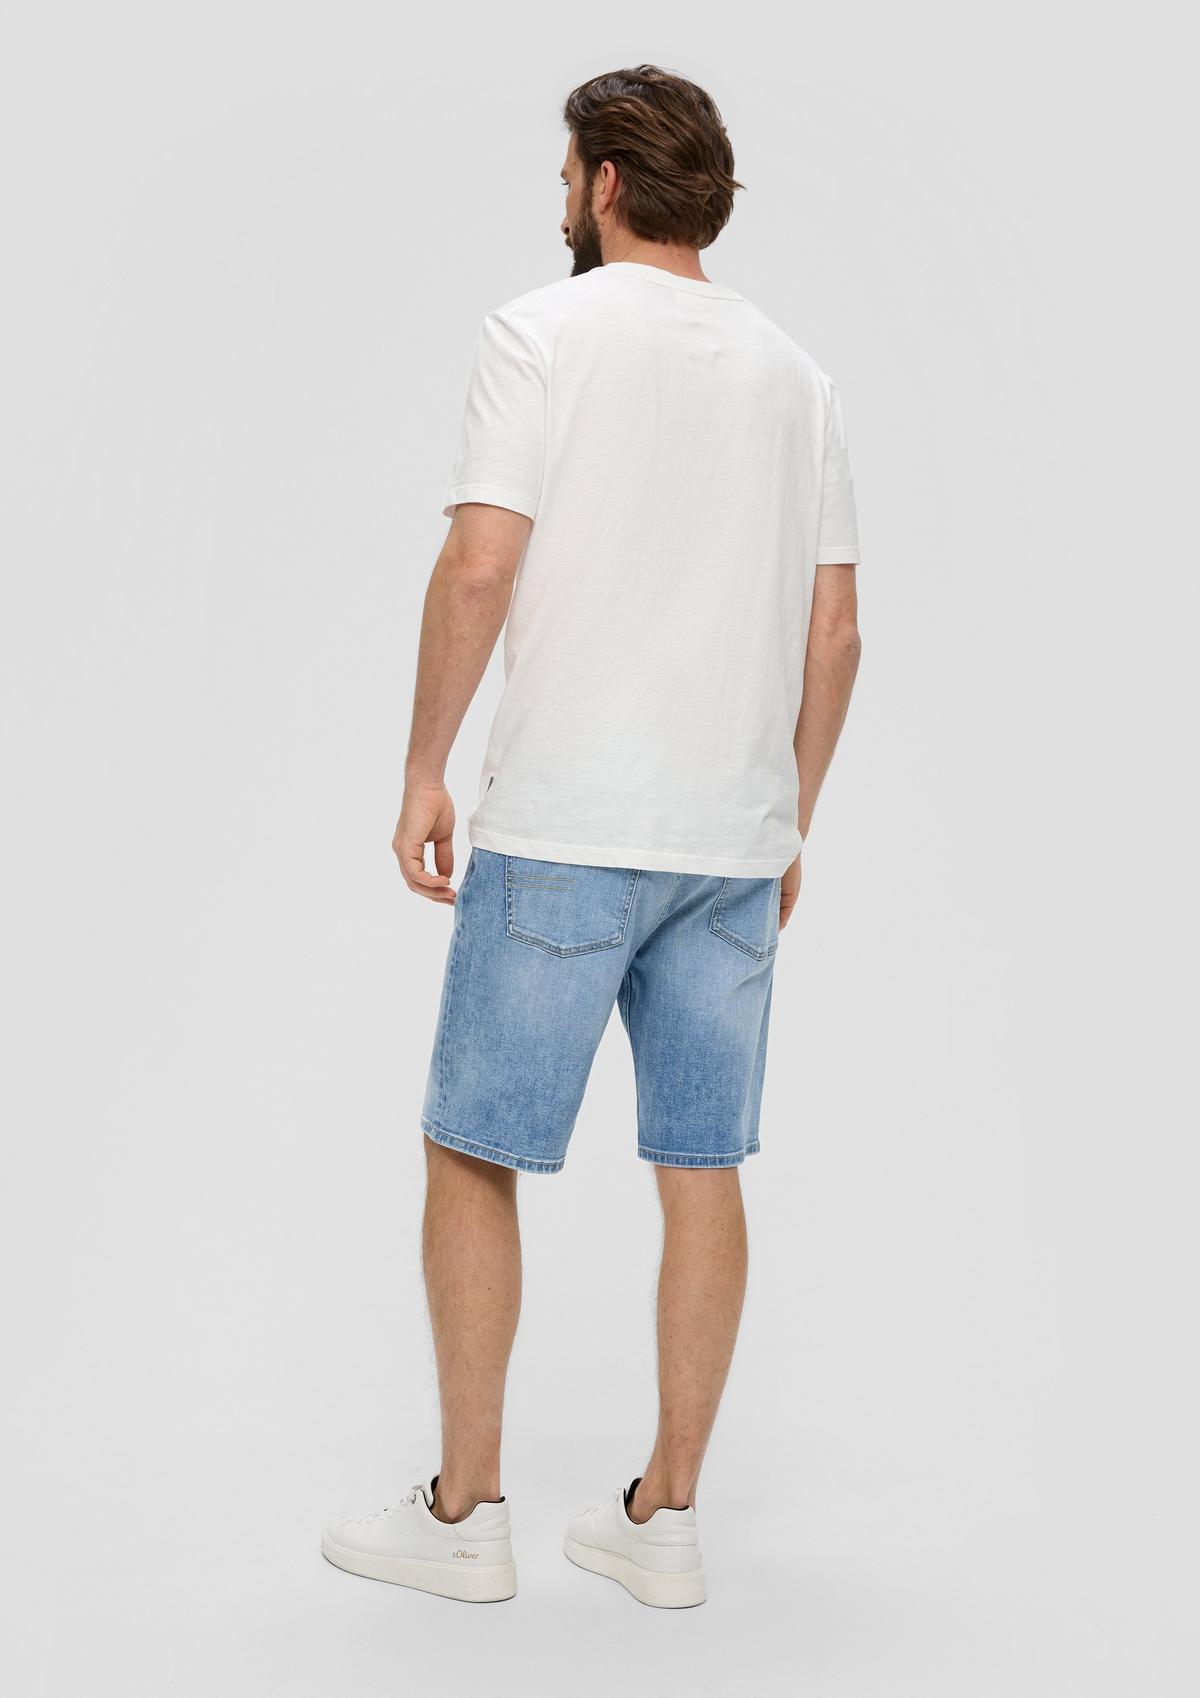 s.Oliver Jeans kratke hlače/kroj Regular Fit/Mid Rise/ravne hlačnice